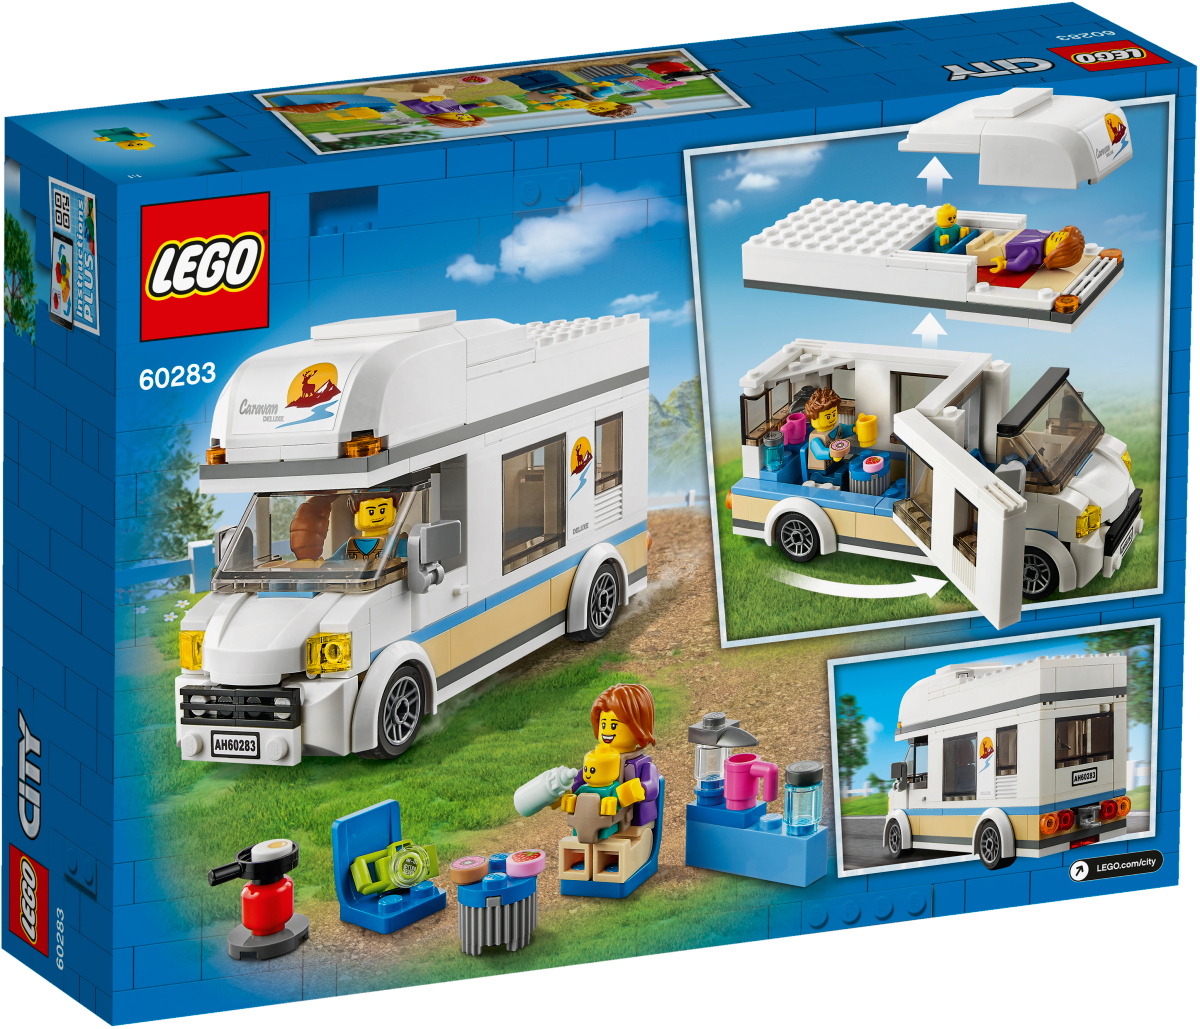 LEGO CITY Конструктор "Отпуск в доме на колесах" 60283 - фото 4